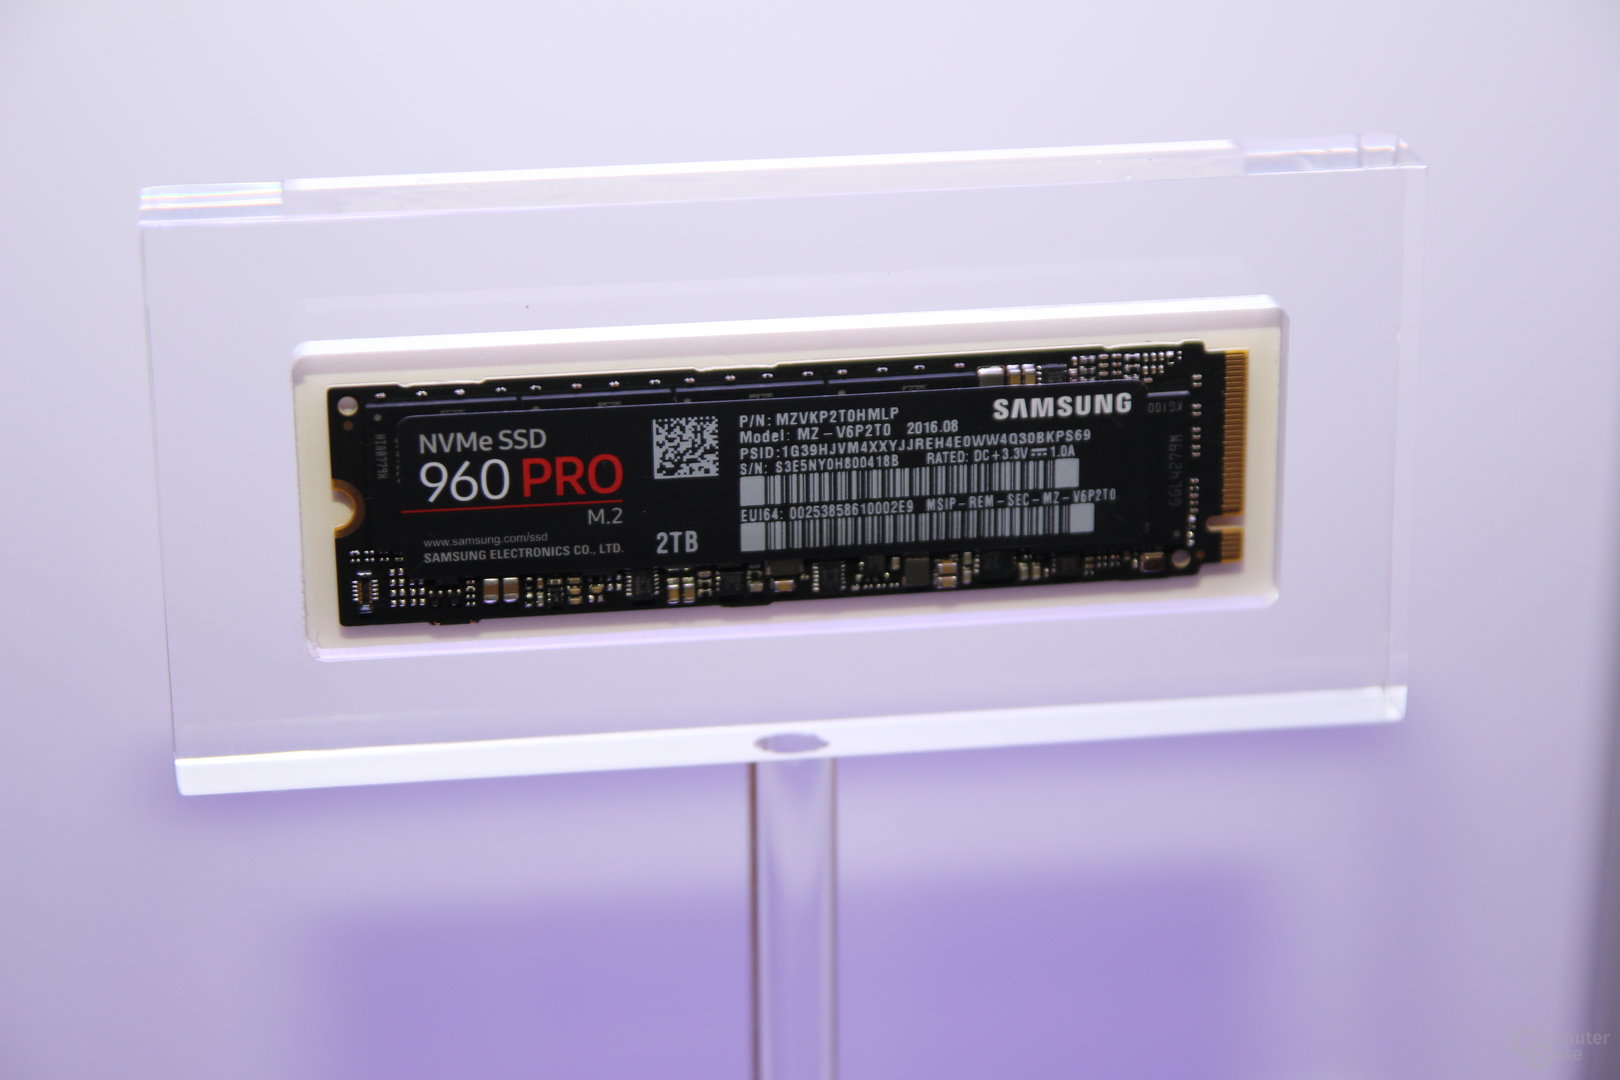 960 Pro: 4 NAND-Chips und Controller + DRAM in einem Package